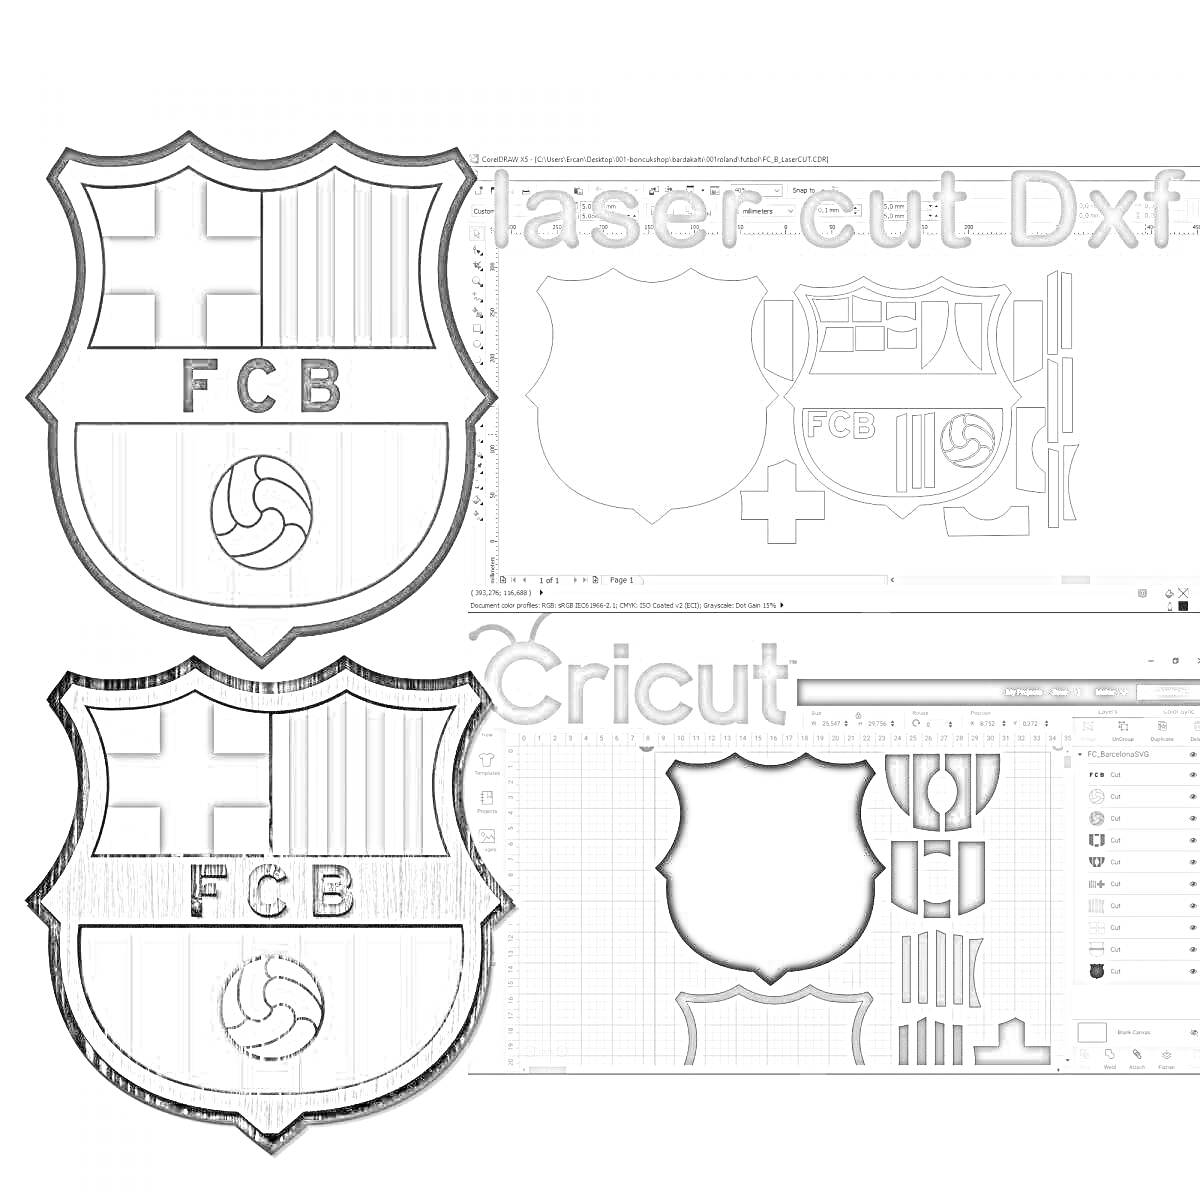 Раскраска Эмблема Барселона на двух участках, один контурный эмблема с полосками и мячом в центре, другой пустой шаблон с контуром деталей.